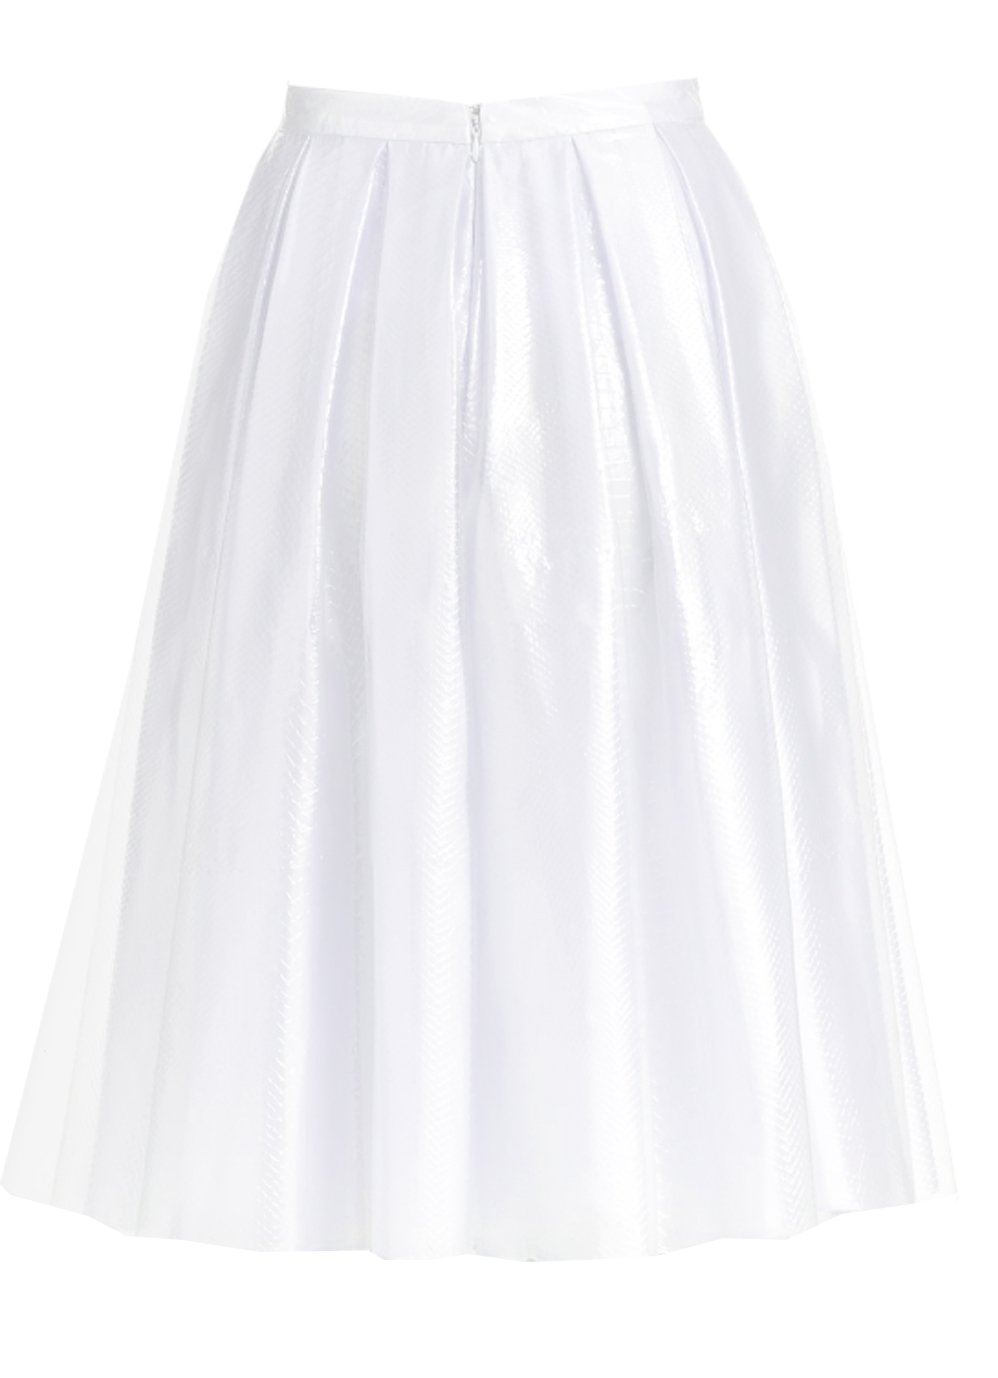 Pleated White Satin Skirt with sheer overlay – Elizabeth's Custom Skirts